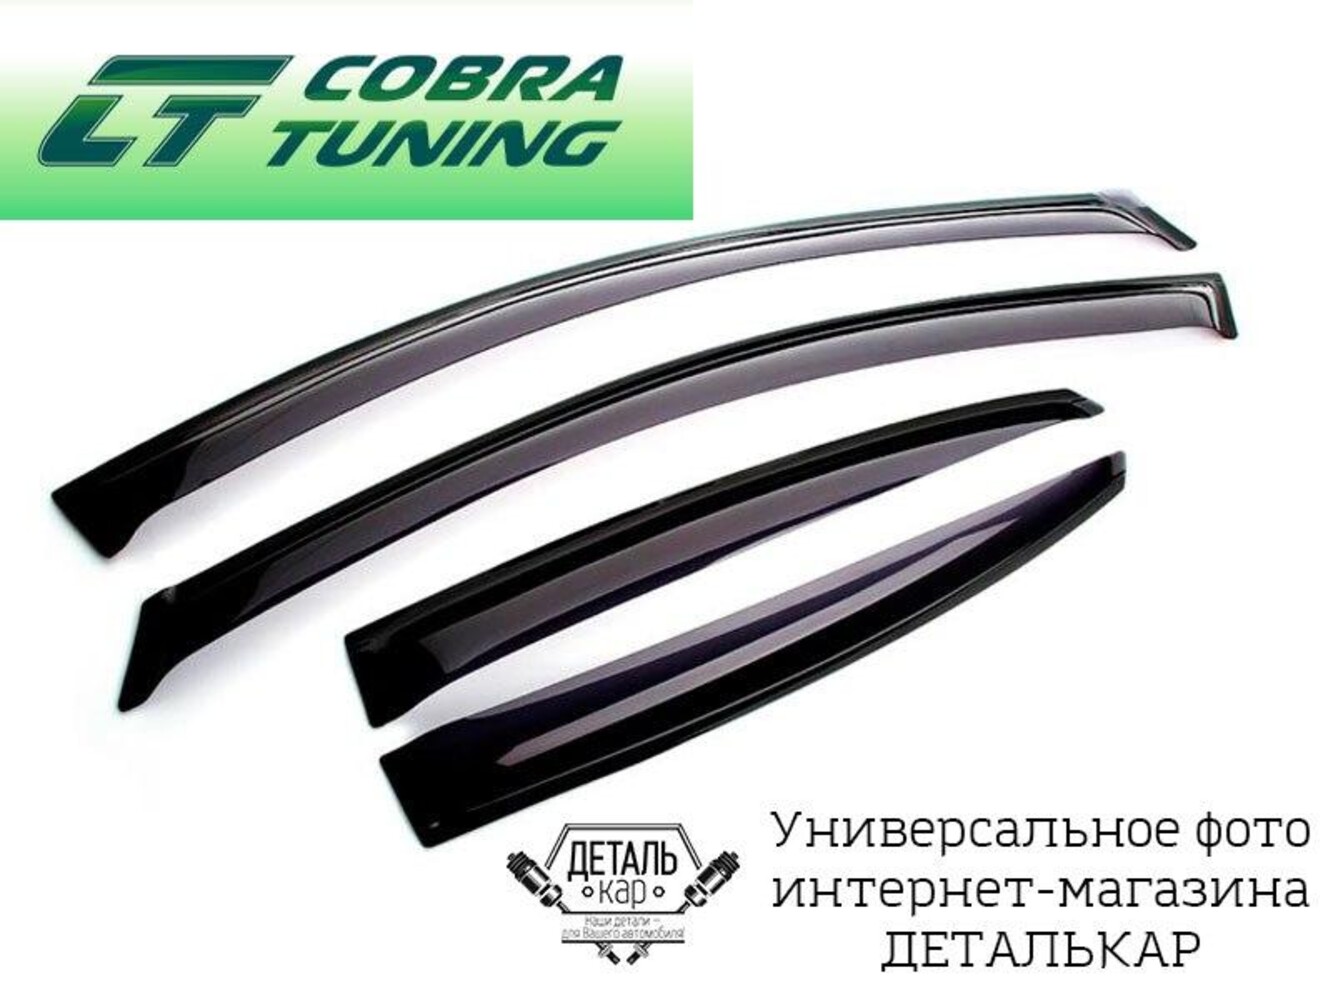 Ветровики, дефлекторы Cobra Tuning для автомобилей ВАЗ 2110, 2112, Лада Приора 2170, 2172